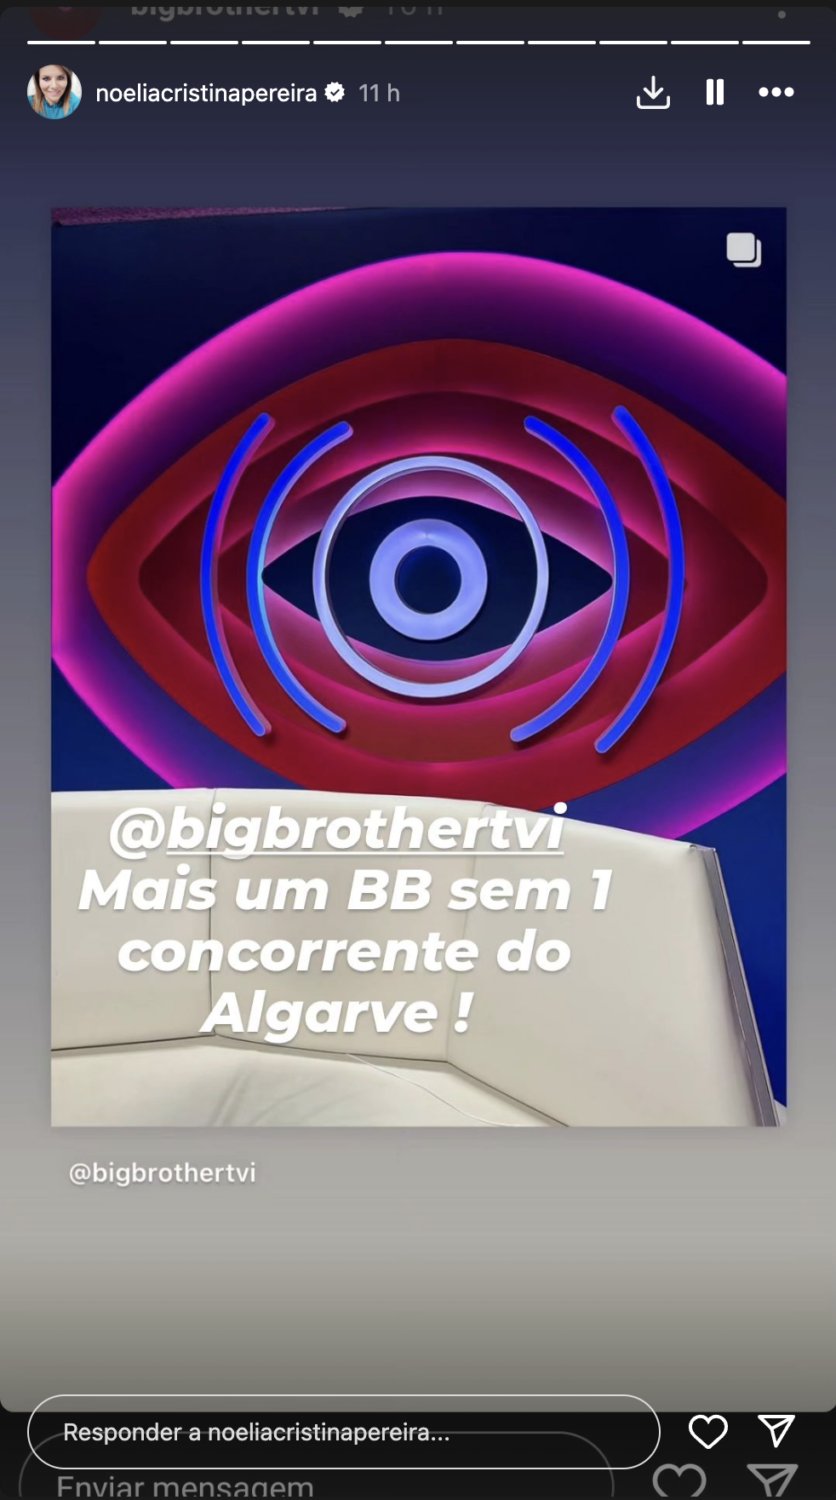 Noélia Pereira revela concorrentes &#8216;preferidos&#8217; do (novo) &#8216;Big Brother&#8217; e deixa desabafo: &#8220;Mais um&#8230;&#8221;